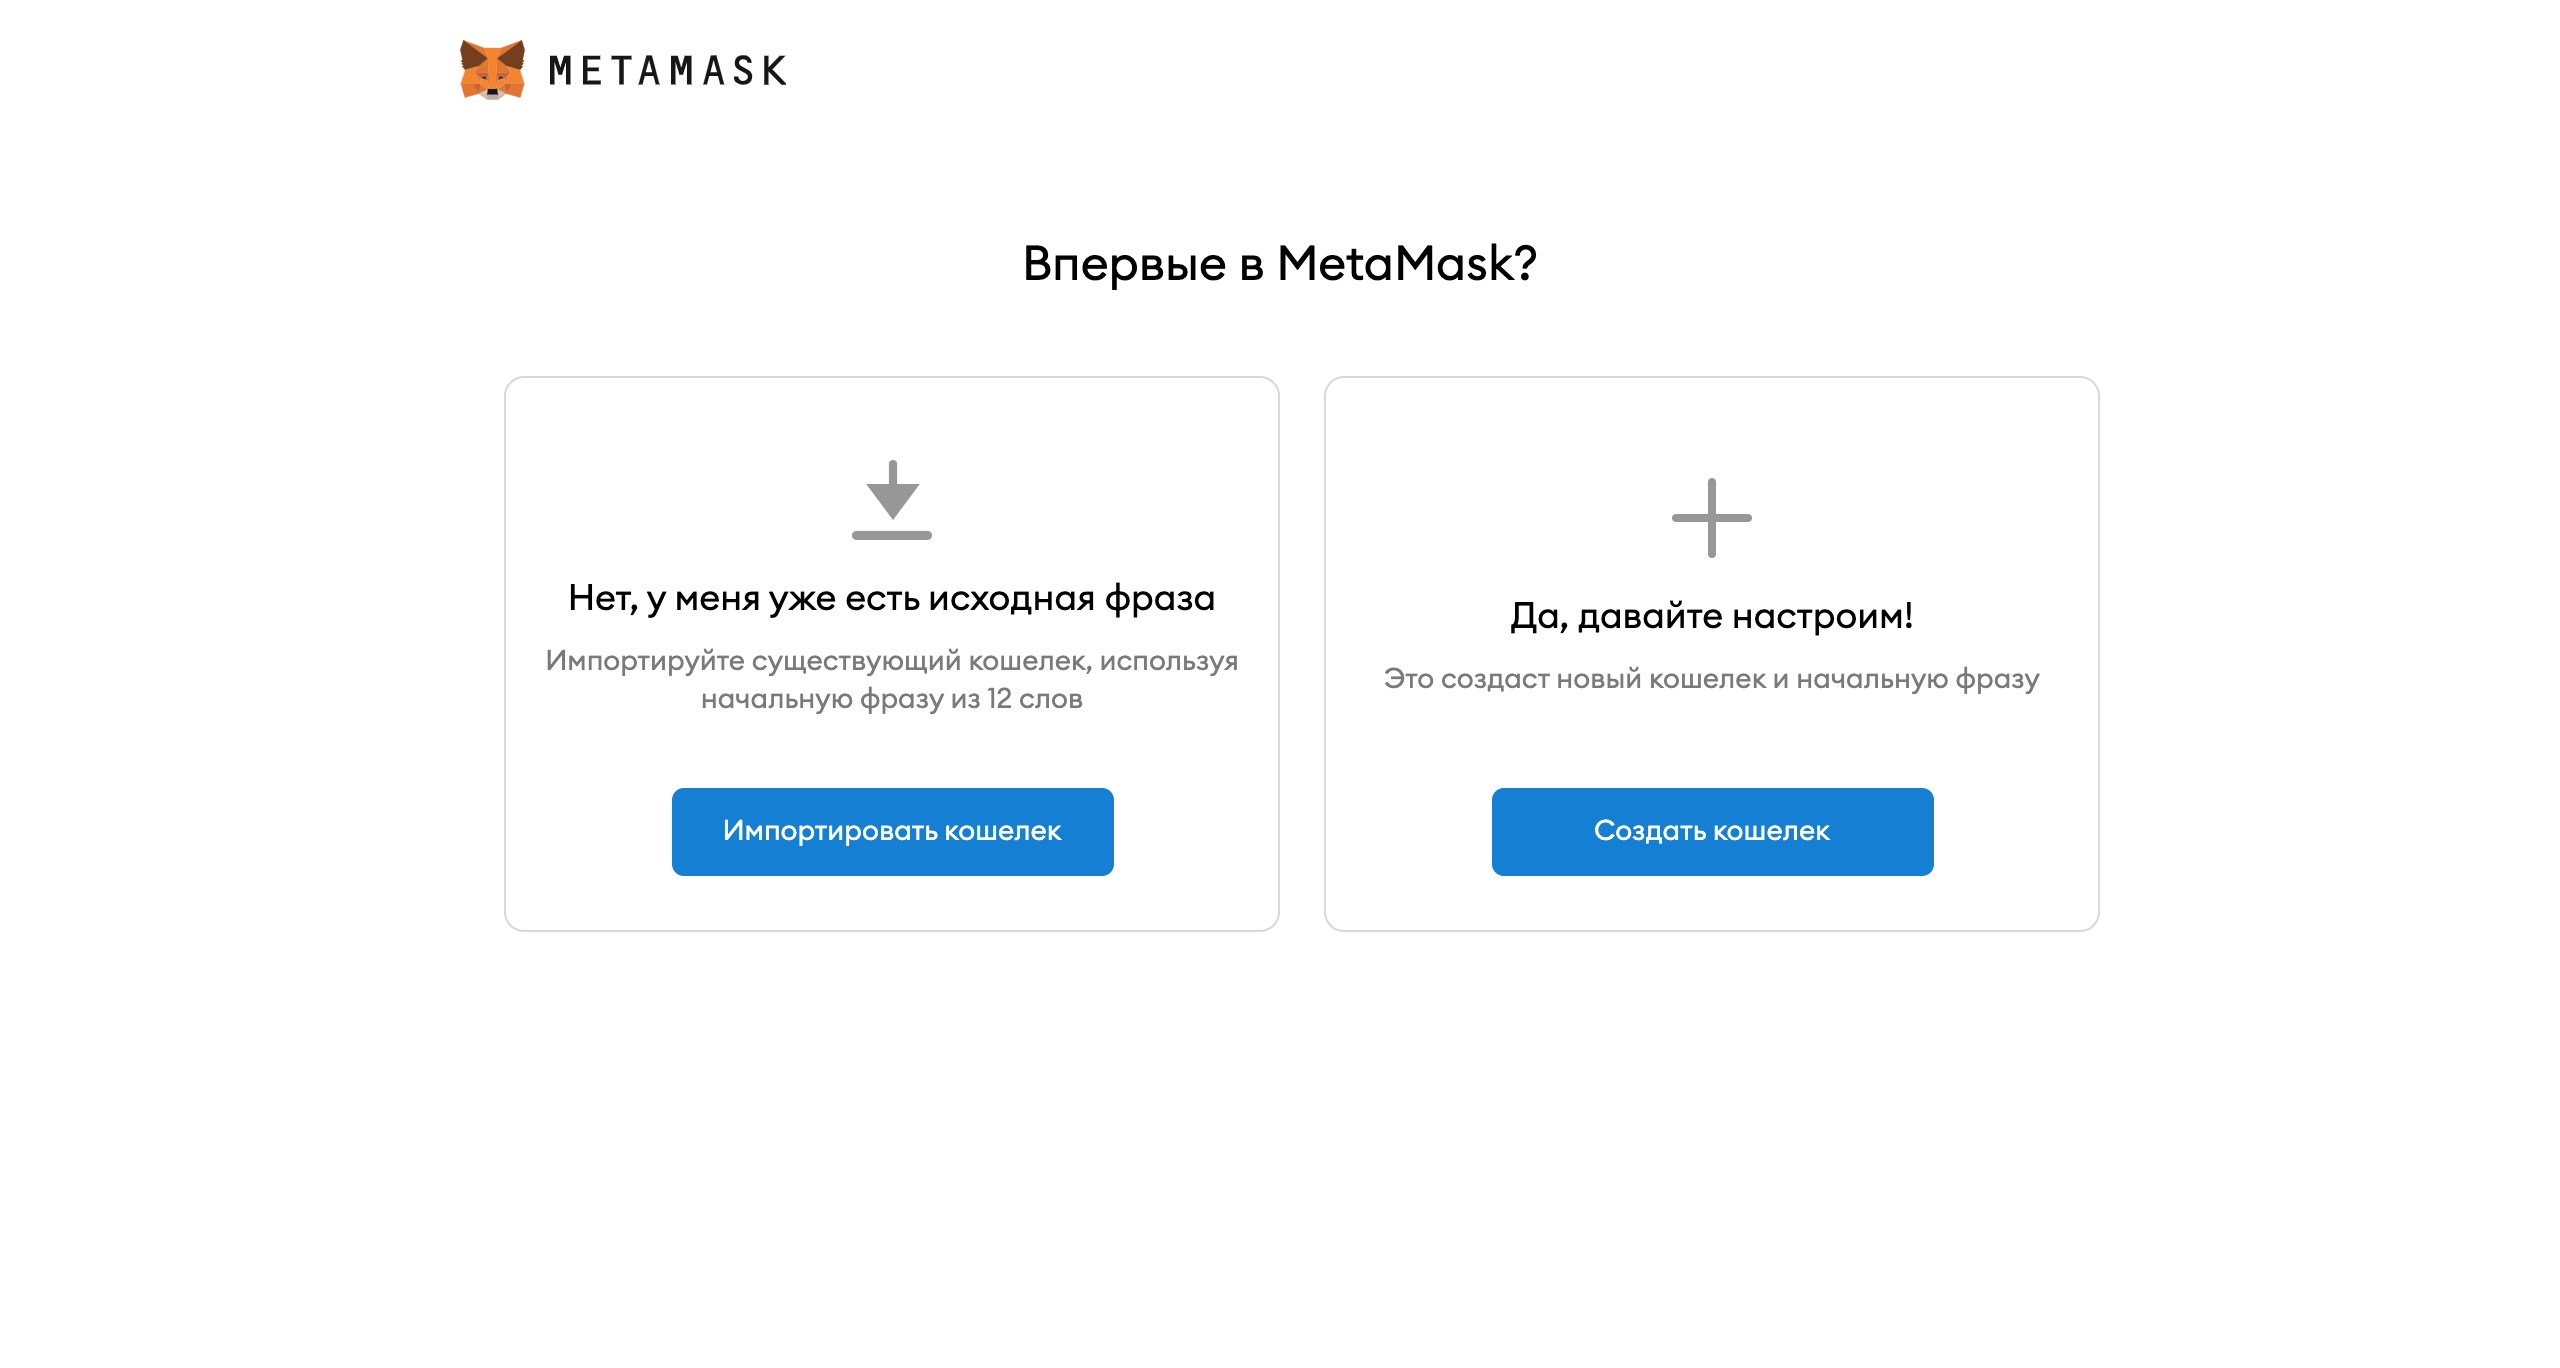 Сид фраза метамаск. METAMASK Chrome Extension. Метамаск СИД фраза. Пароль метамаск. Meta Mask.